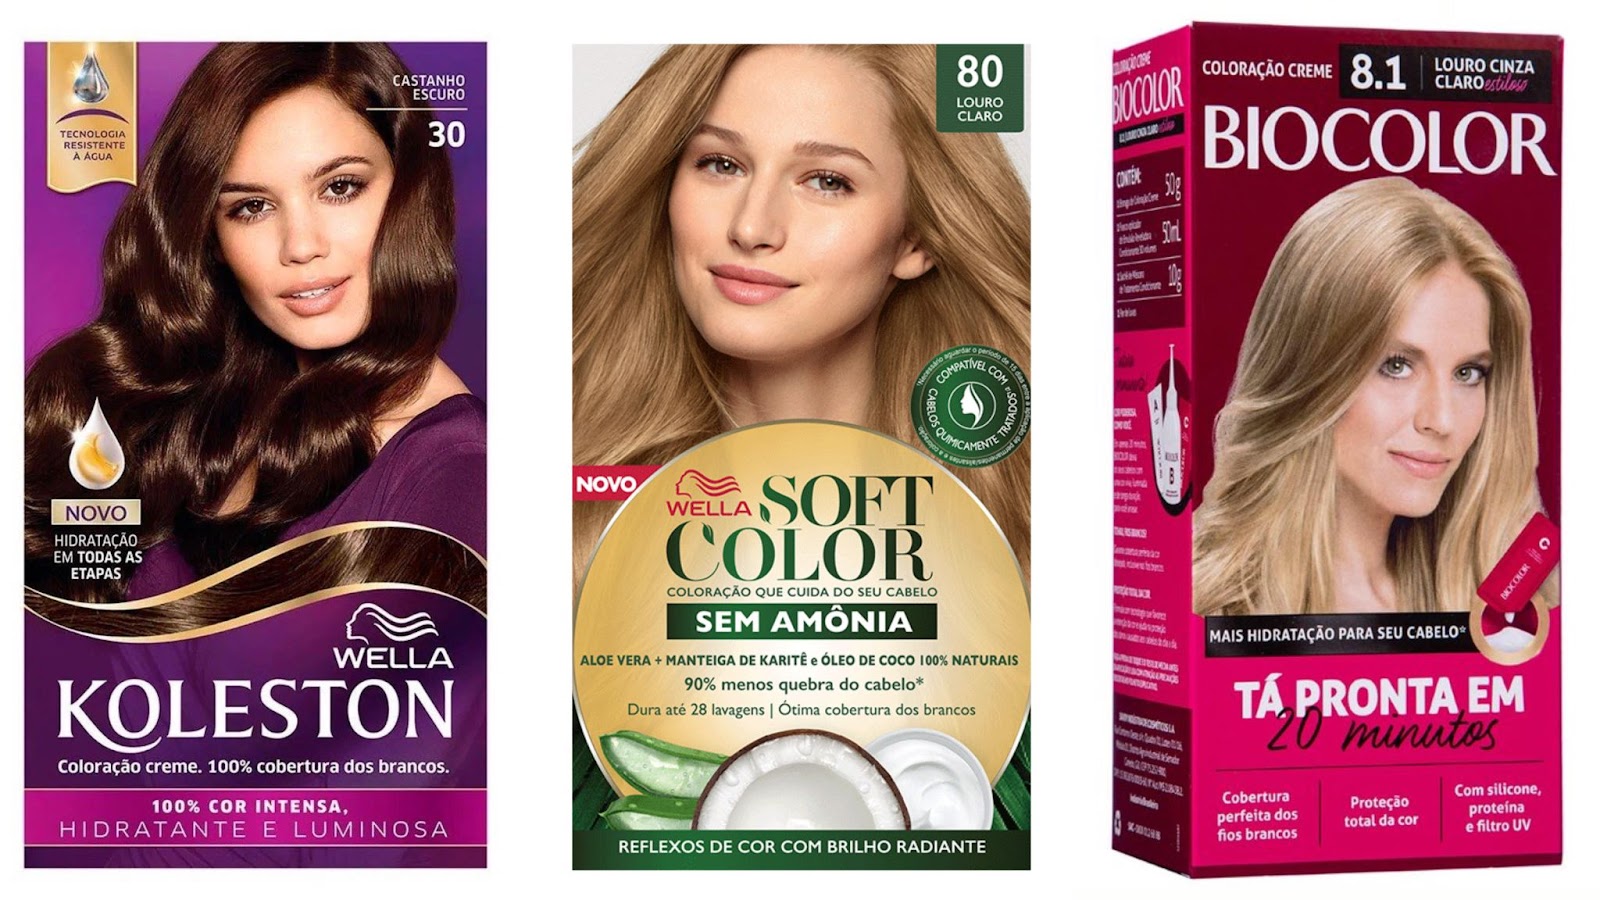 Imagem publicitária de três produtos de tintura para cabelos. As marcas são, respectivamente, Koleston, Soft Color e Biocolor.